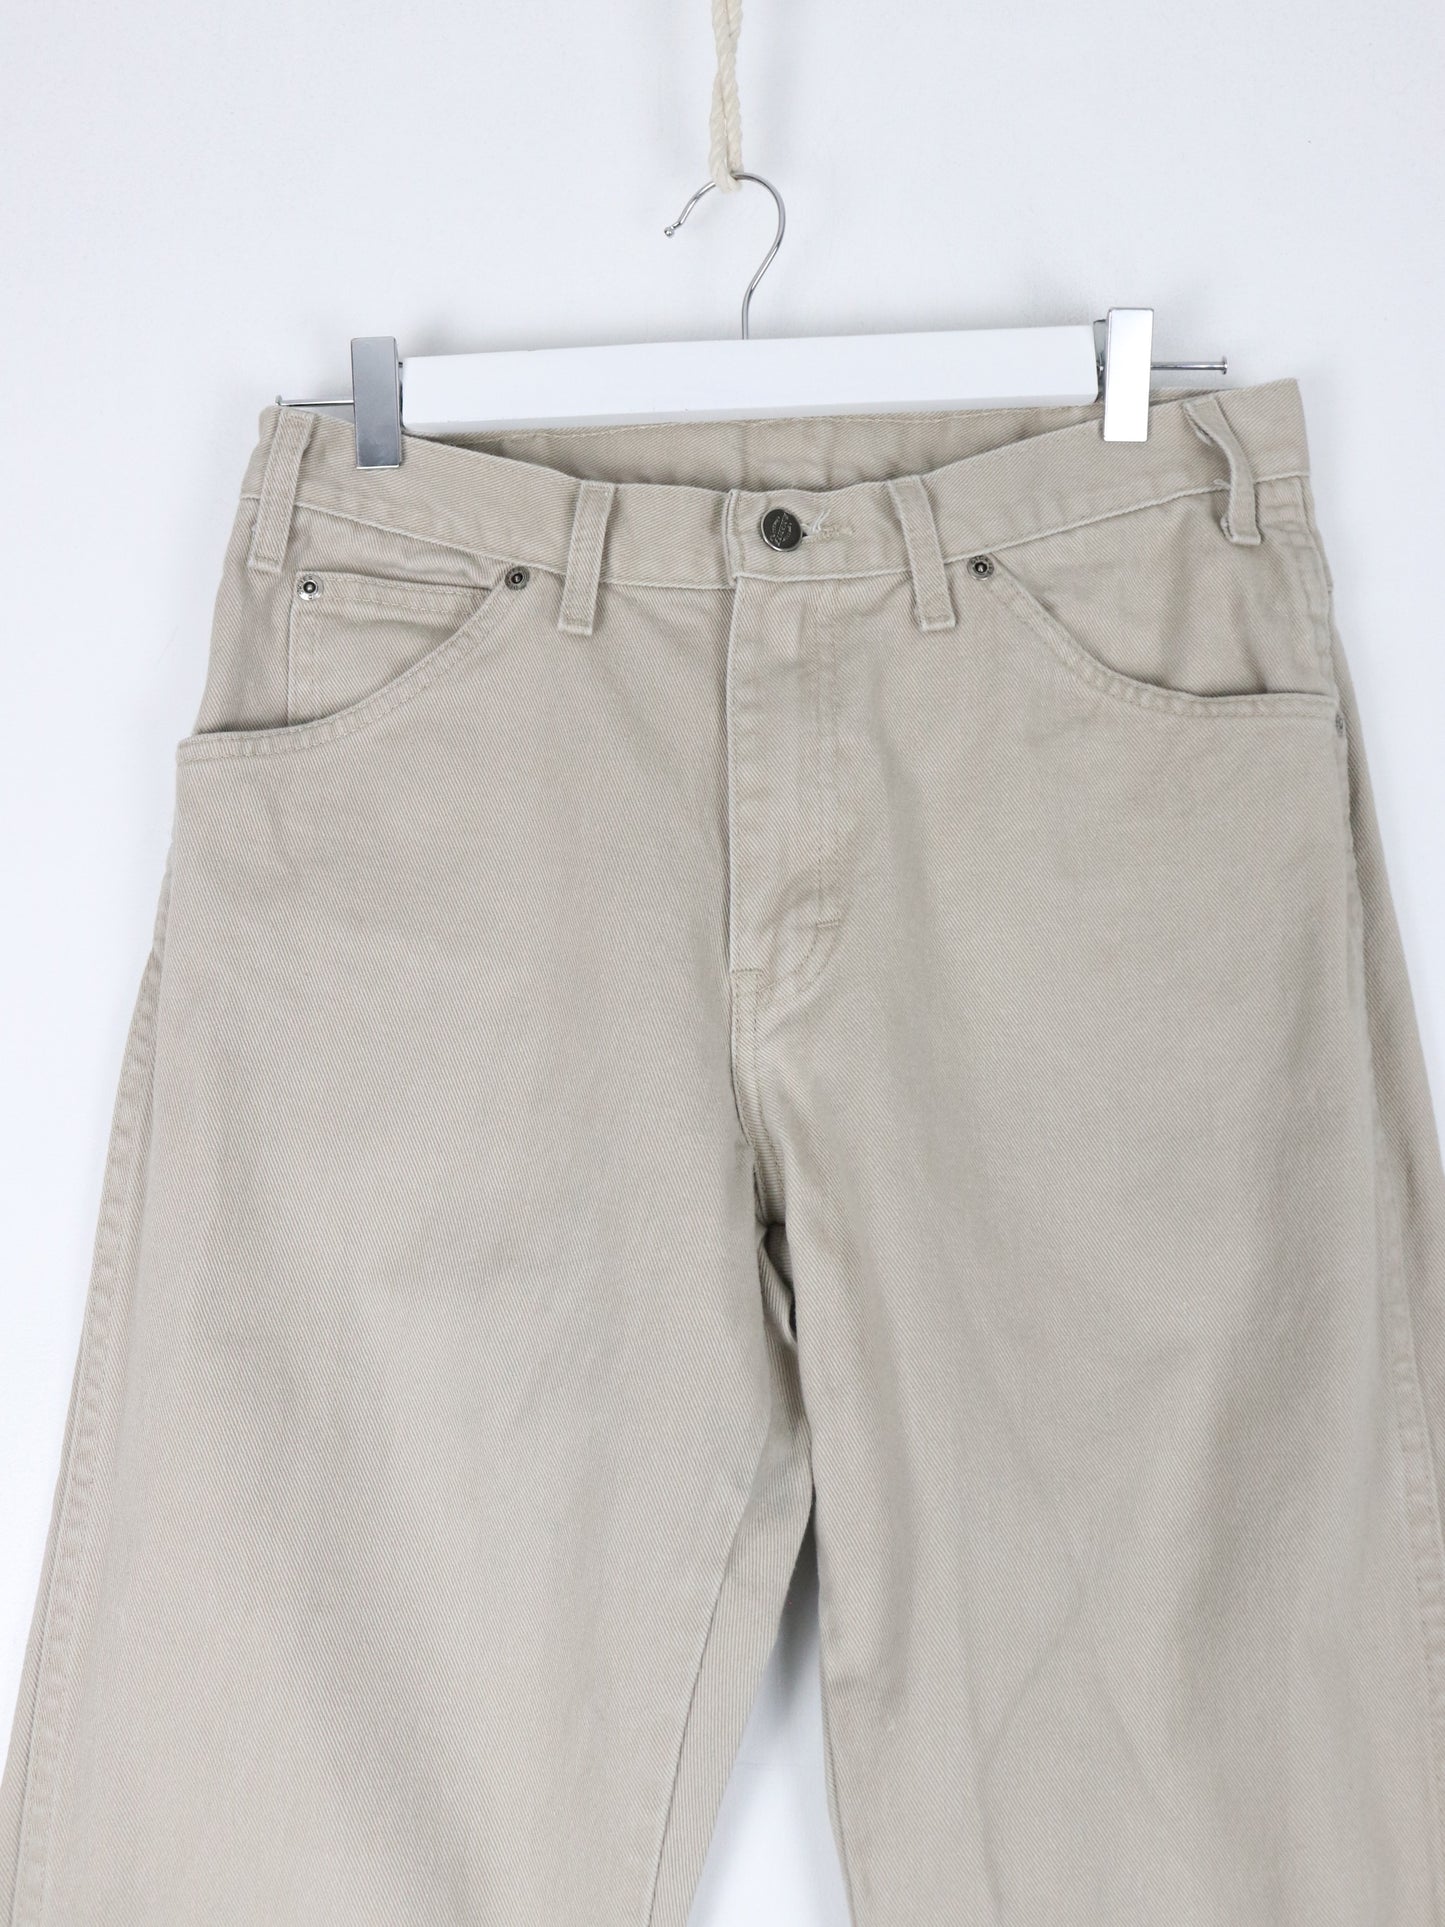 Vintage Dickies Pants Fits Mens 30 x 29 Beige Work Wear Carpenters